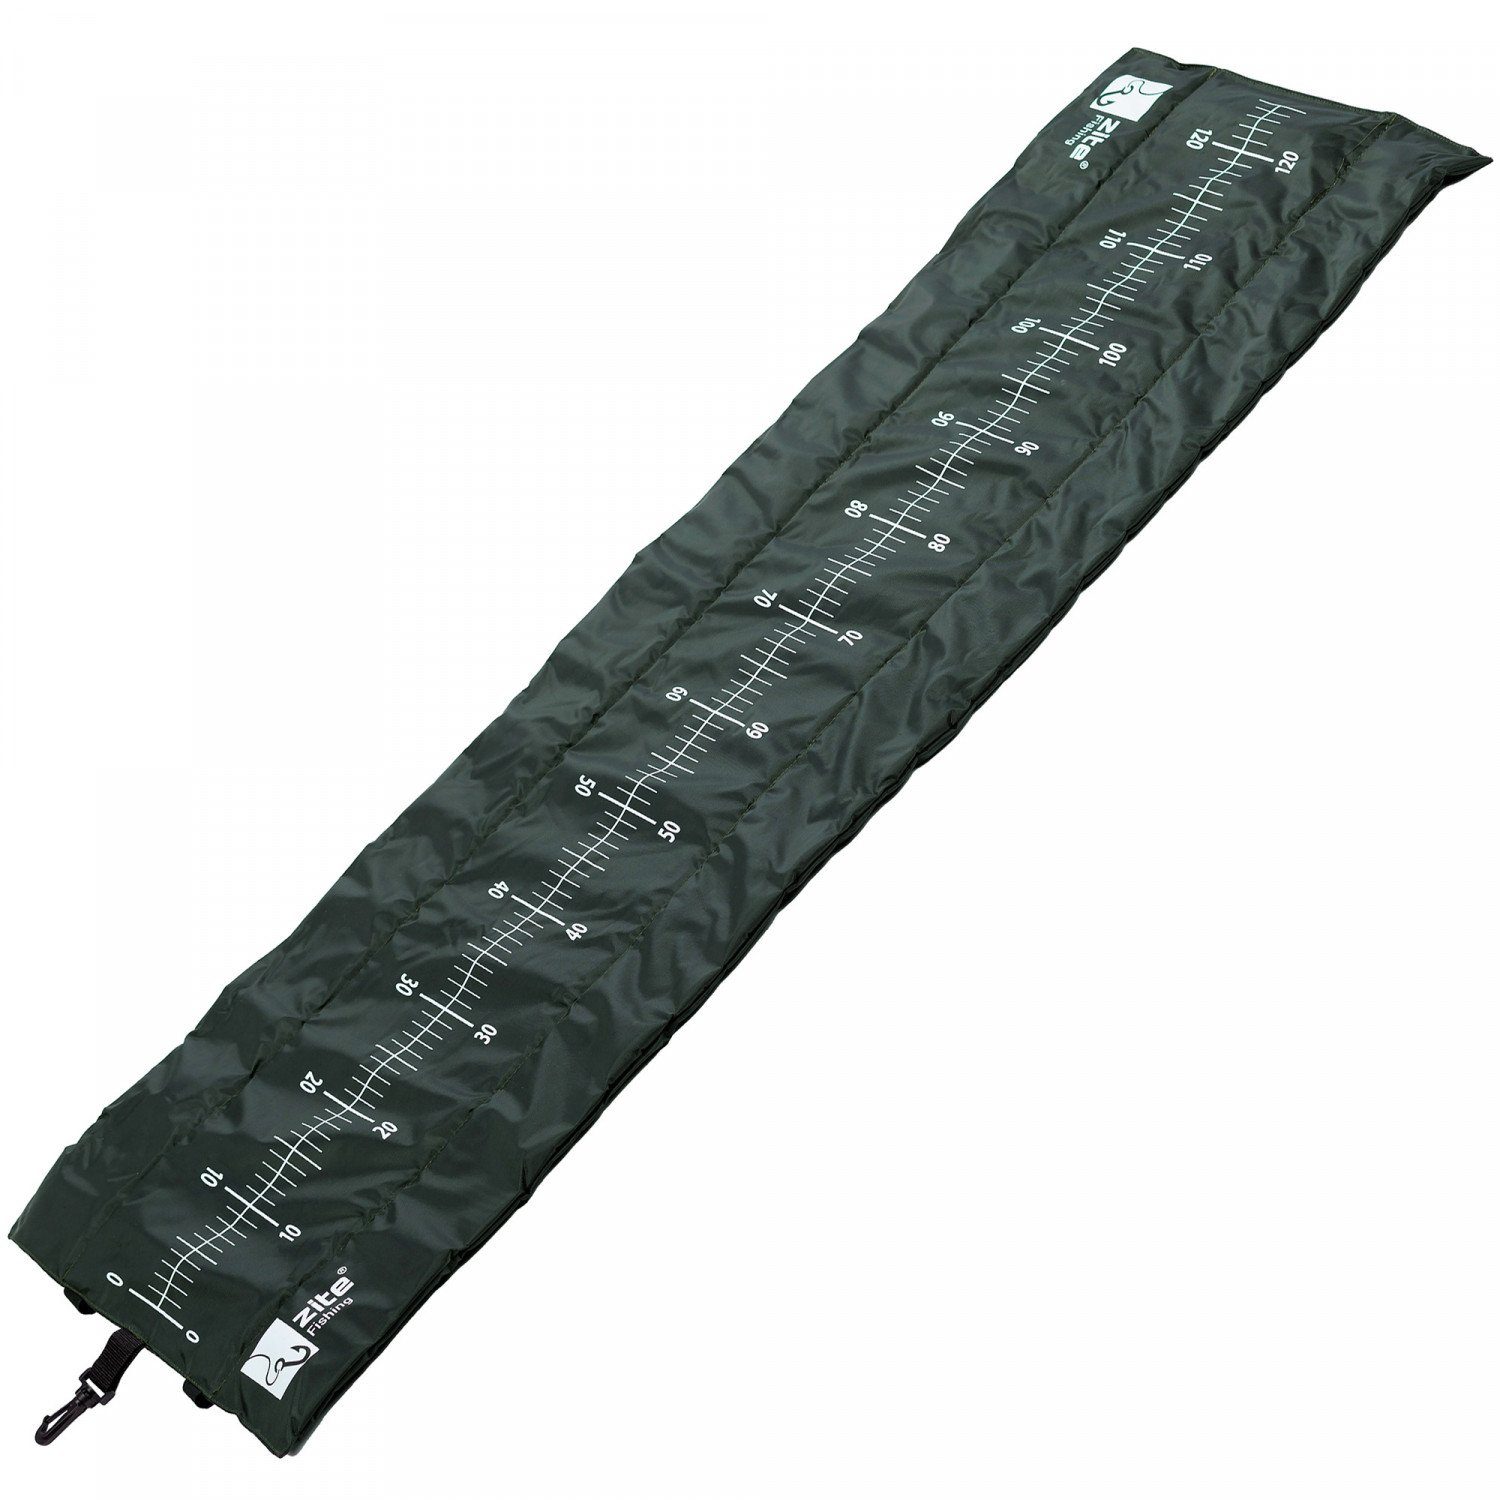 Zite Sportmatte Raubfisch Abhakmatte für das Raubfischangeln auf Hechte & Zander, 130 x 40 cm aufgedrucktes Maßband mit einer Messskala von 125 cm